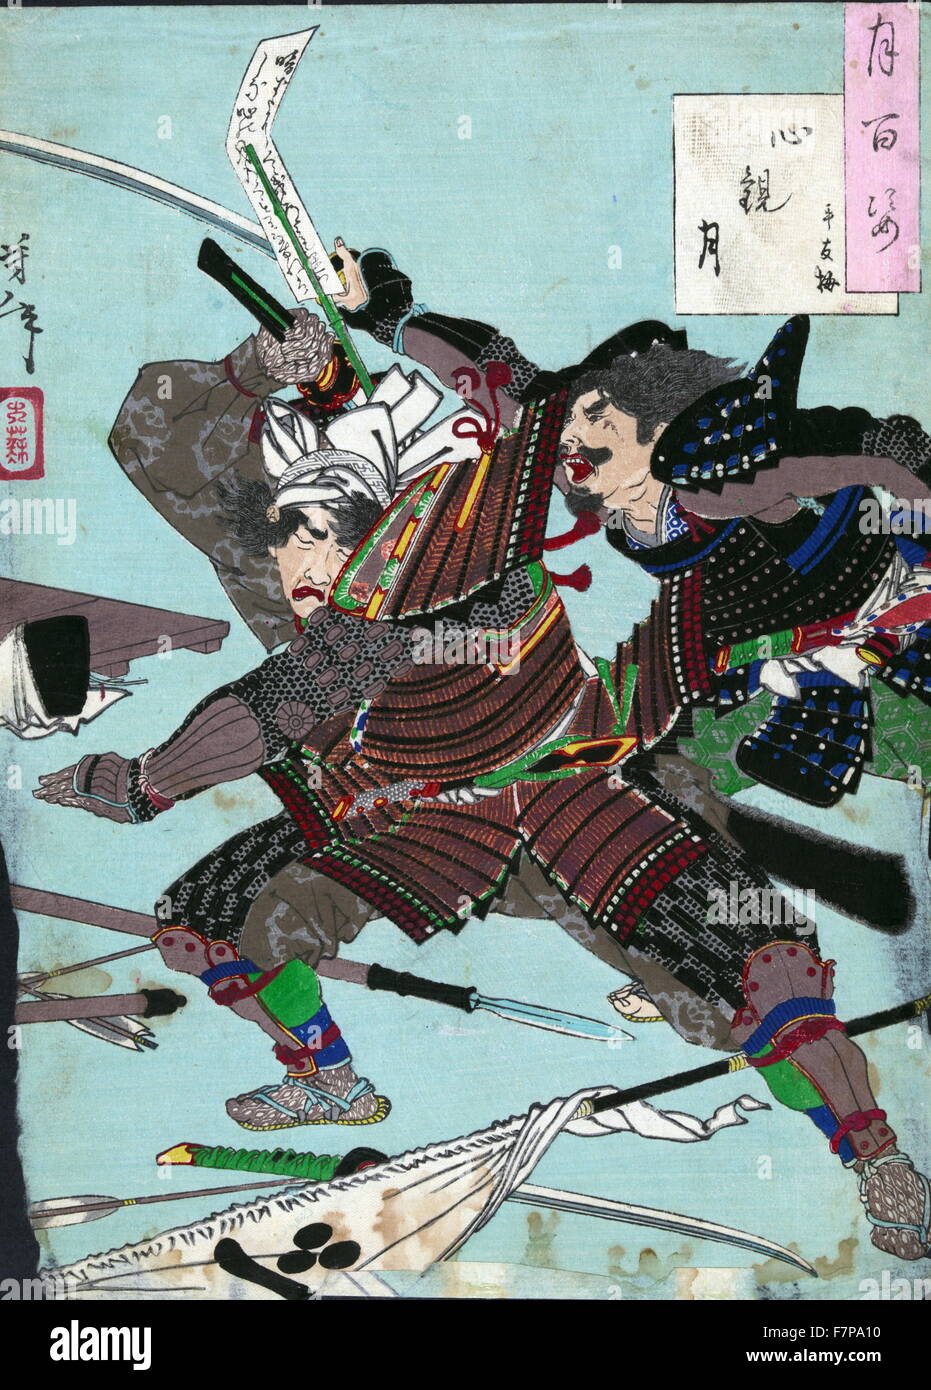 taisou samurai jack